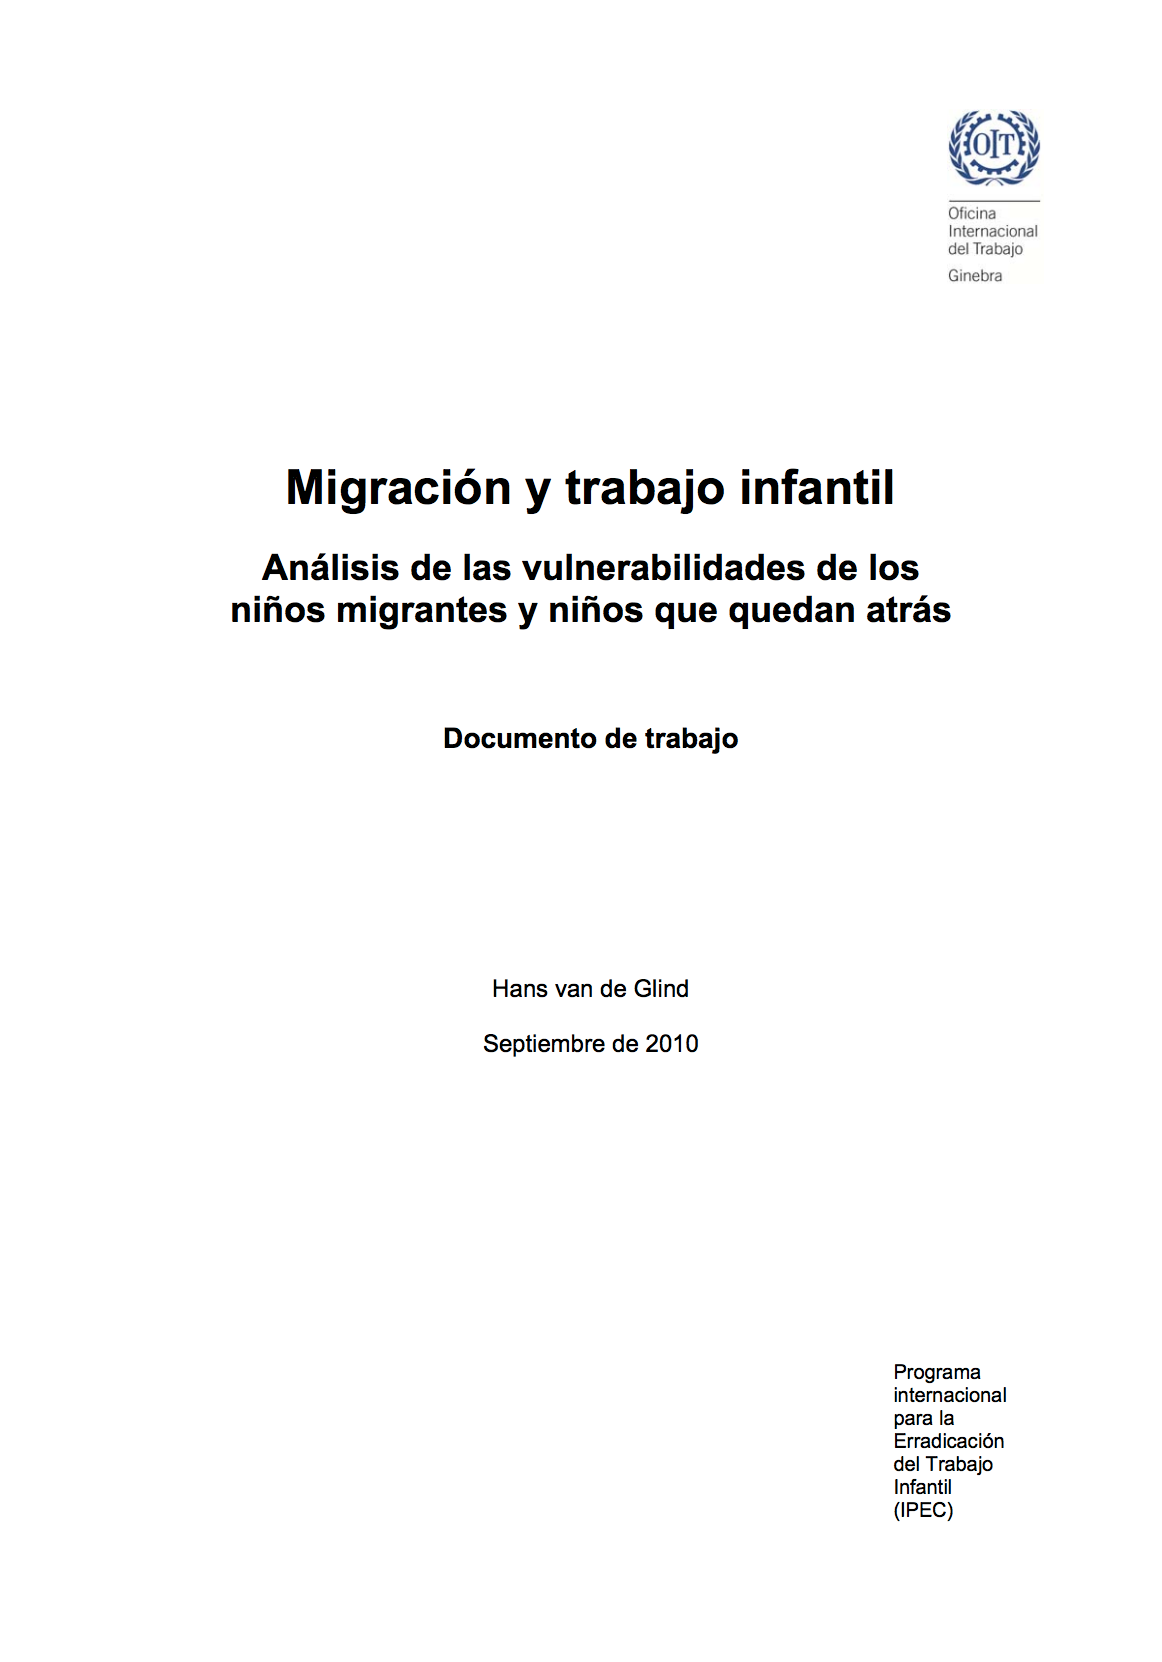 Migración y trabajo infantil: Explorar las vulnerabilidades de los niños migrantes y de aquellos que se han dejado atrás